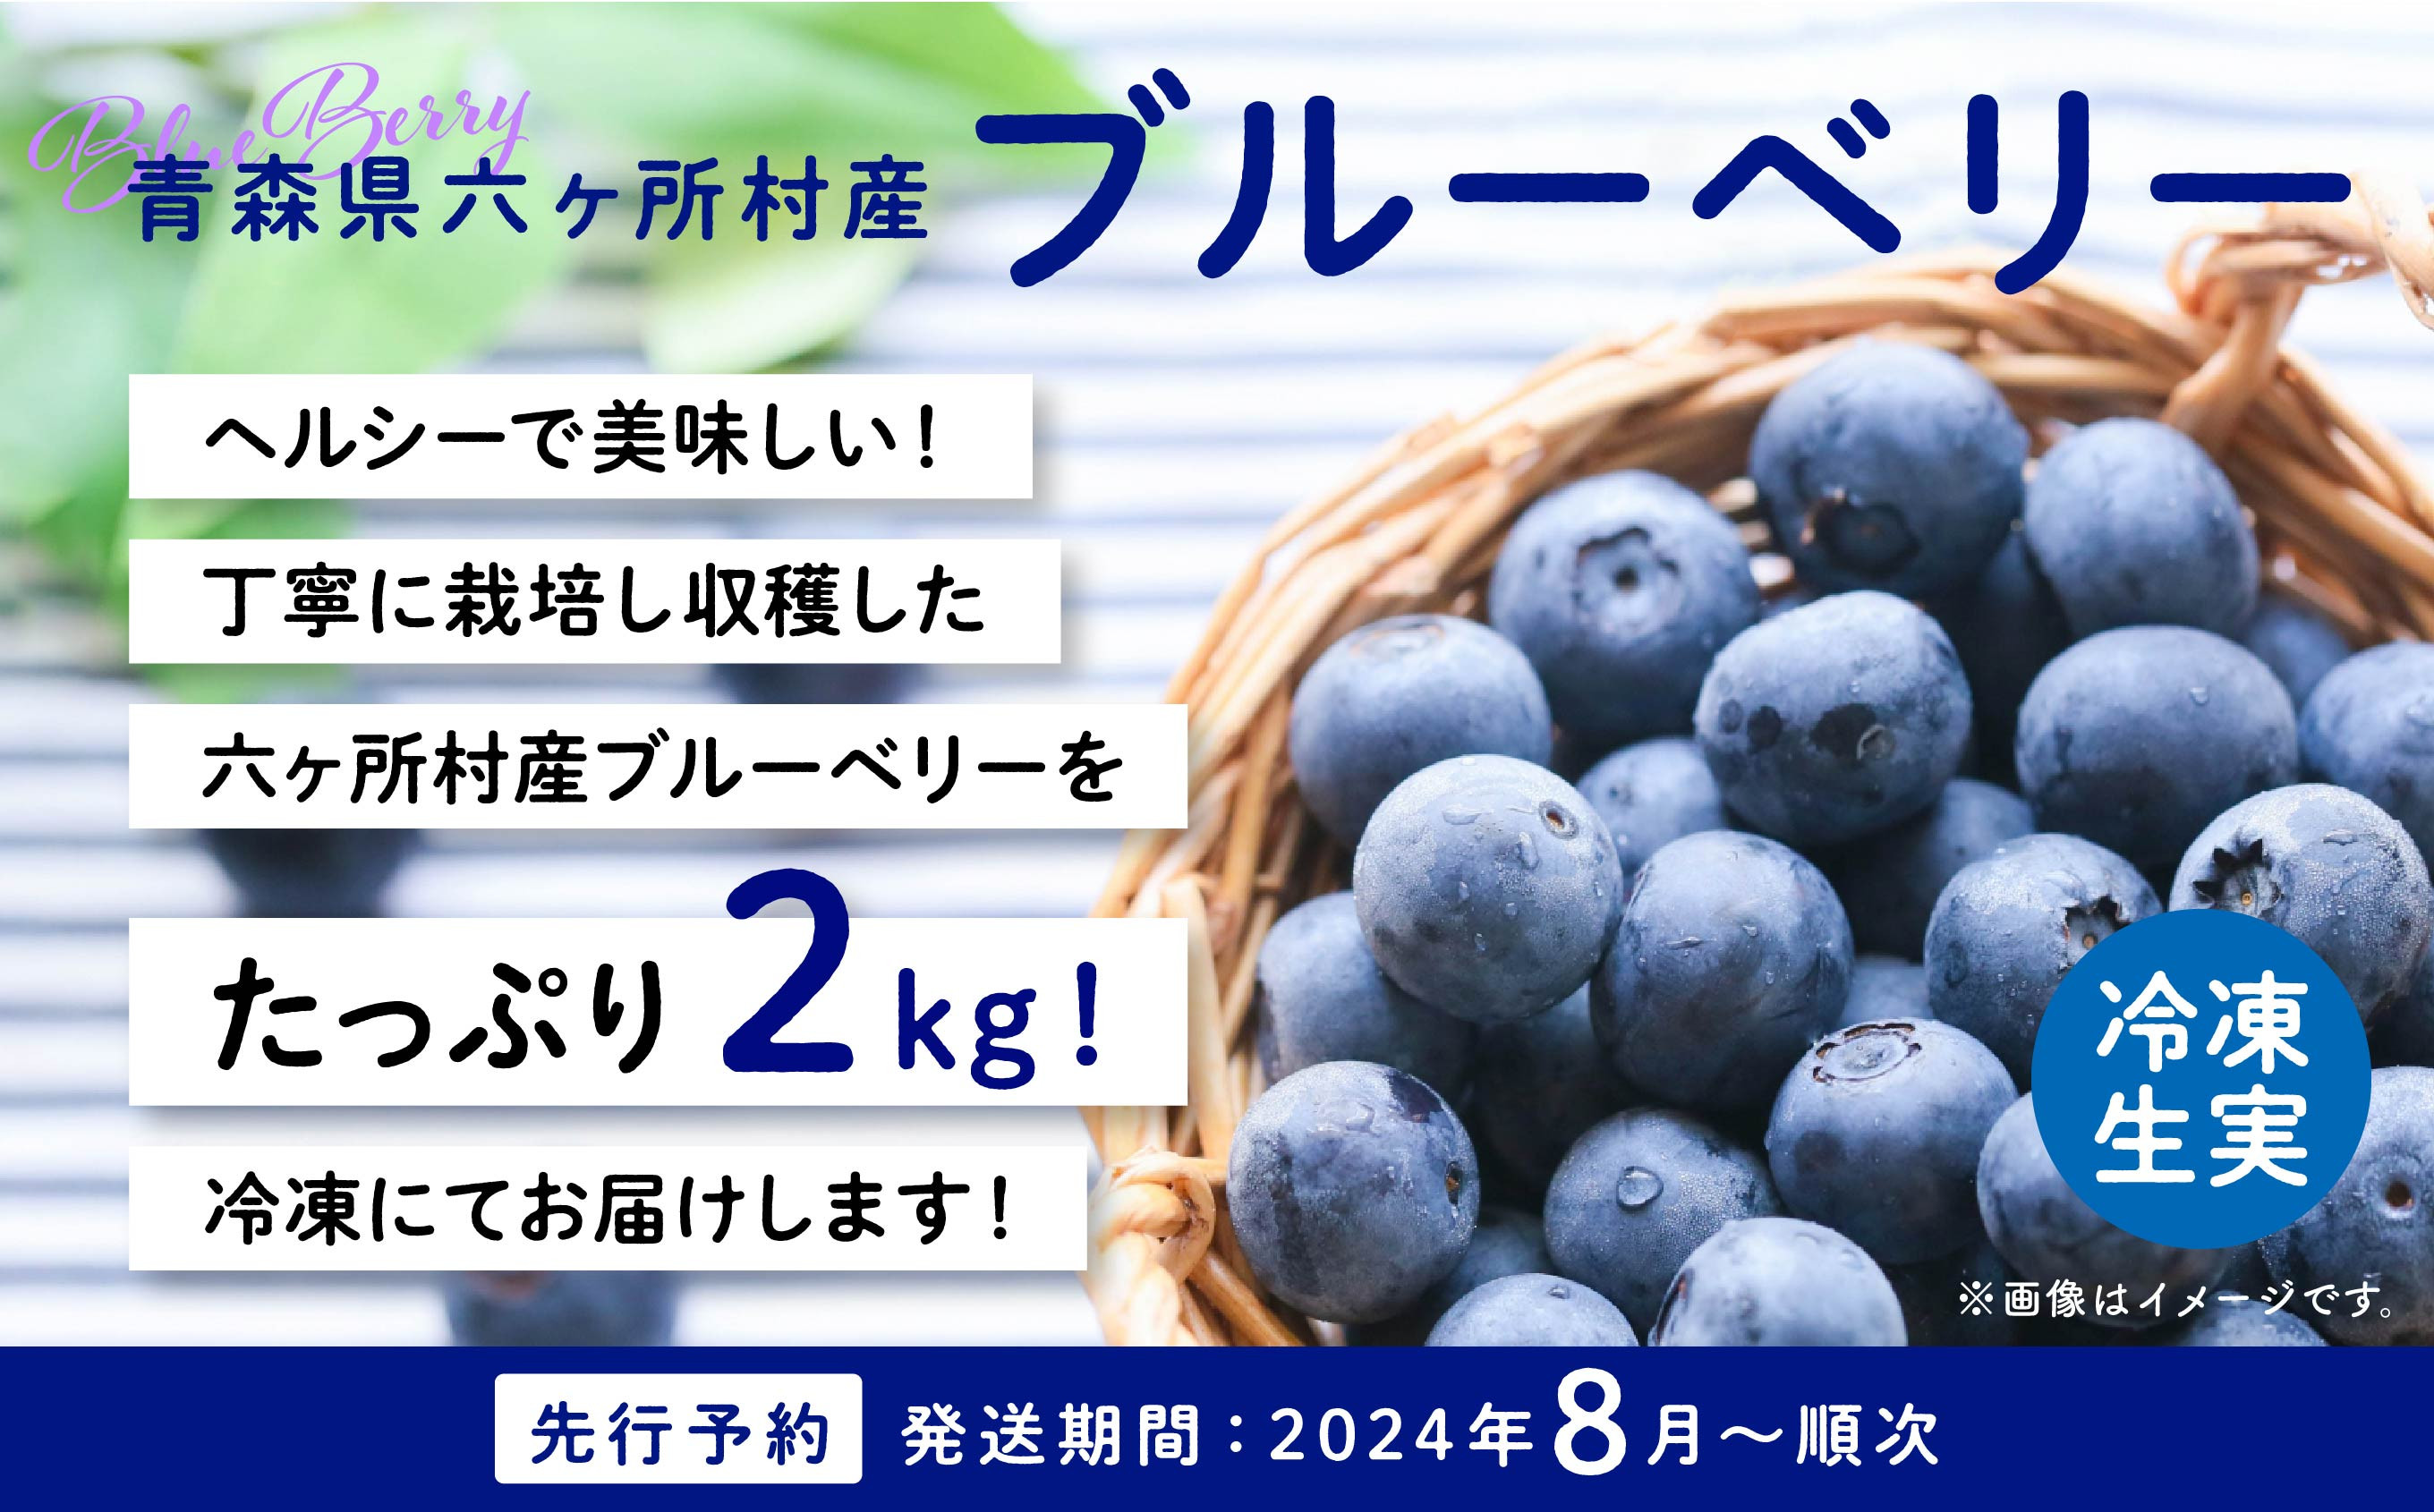 
《 先行予約 》 2024年 8月中旬～順次発送
青森県 六ヶ所村産 ブルーベリー 冷凍生実 2kg
